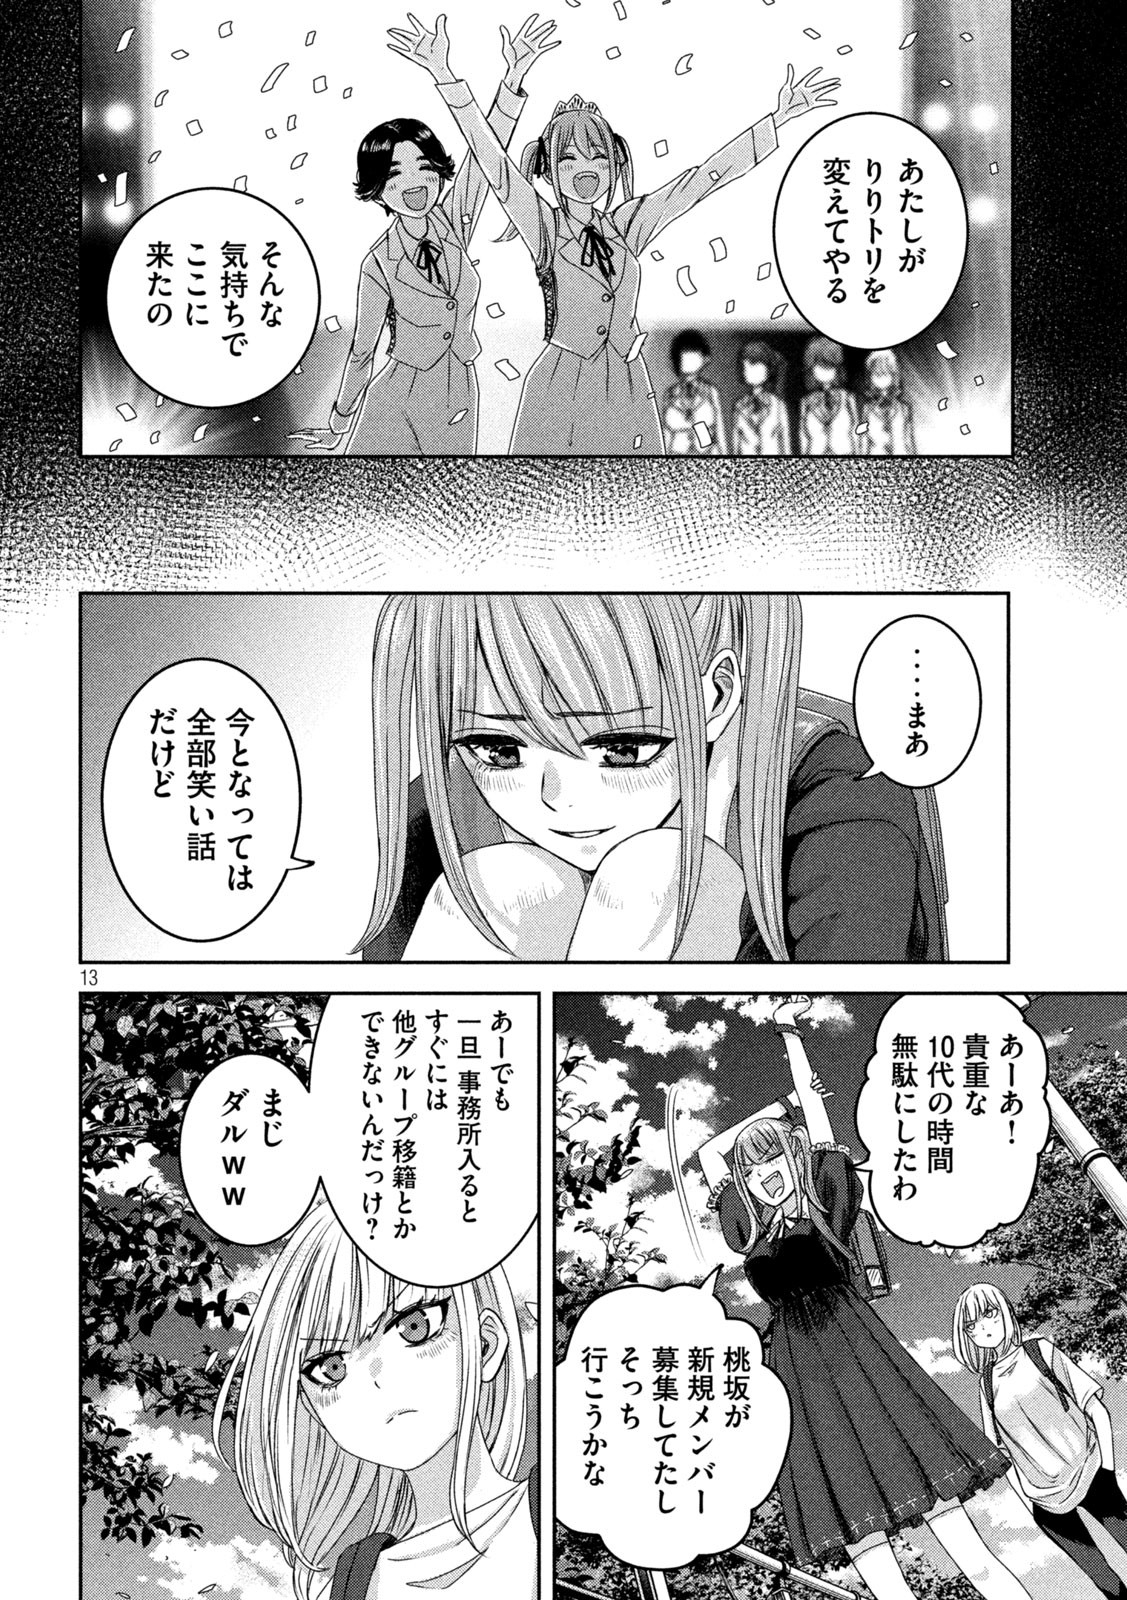 Watashi no Arika - Chapter 36 - Page 13